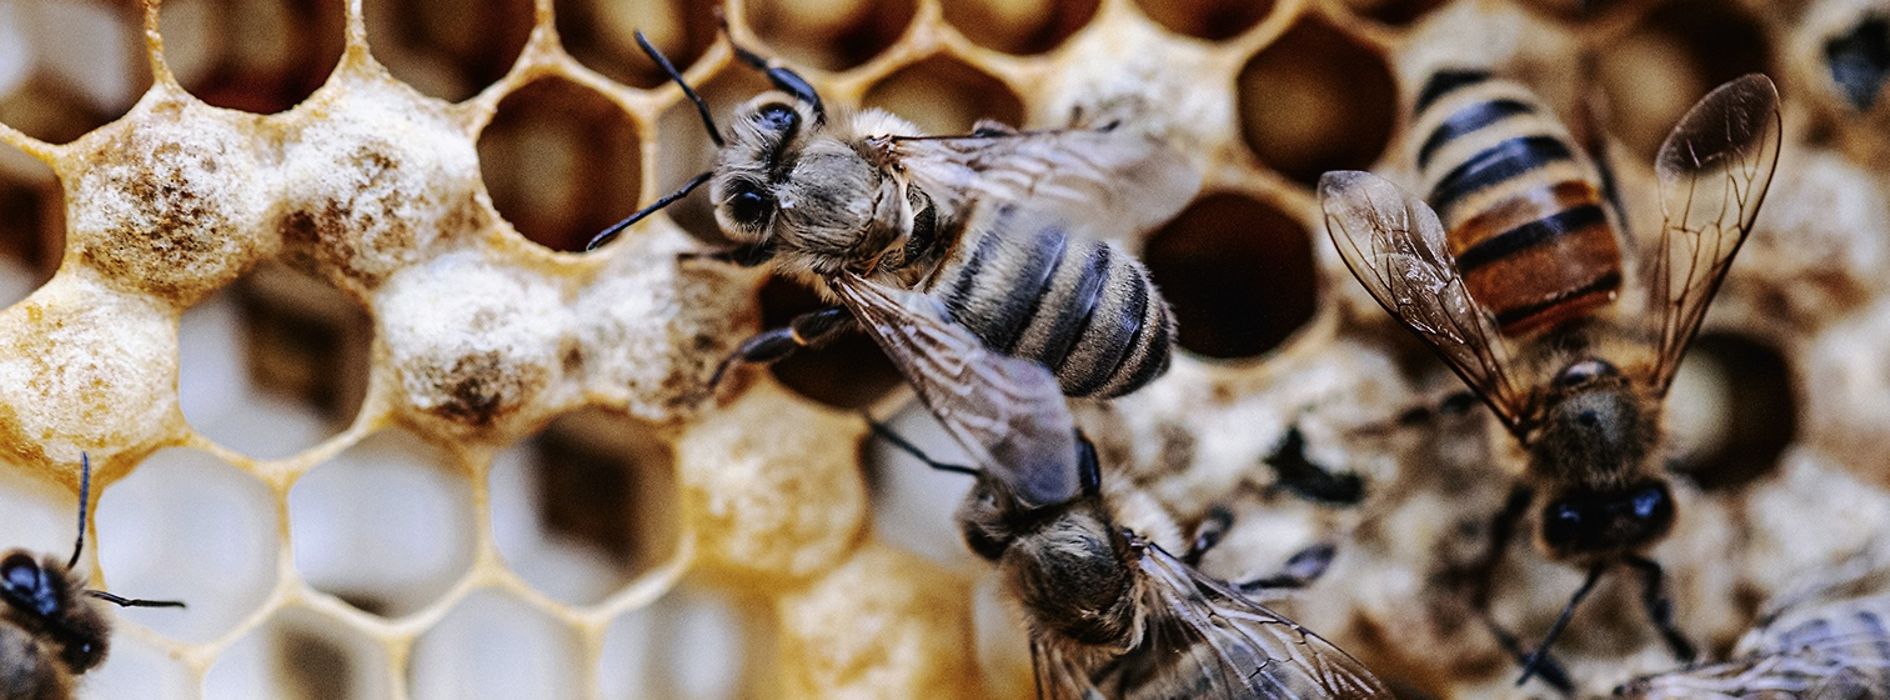 ミツバチと巣礎